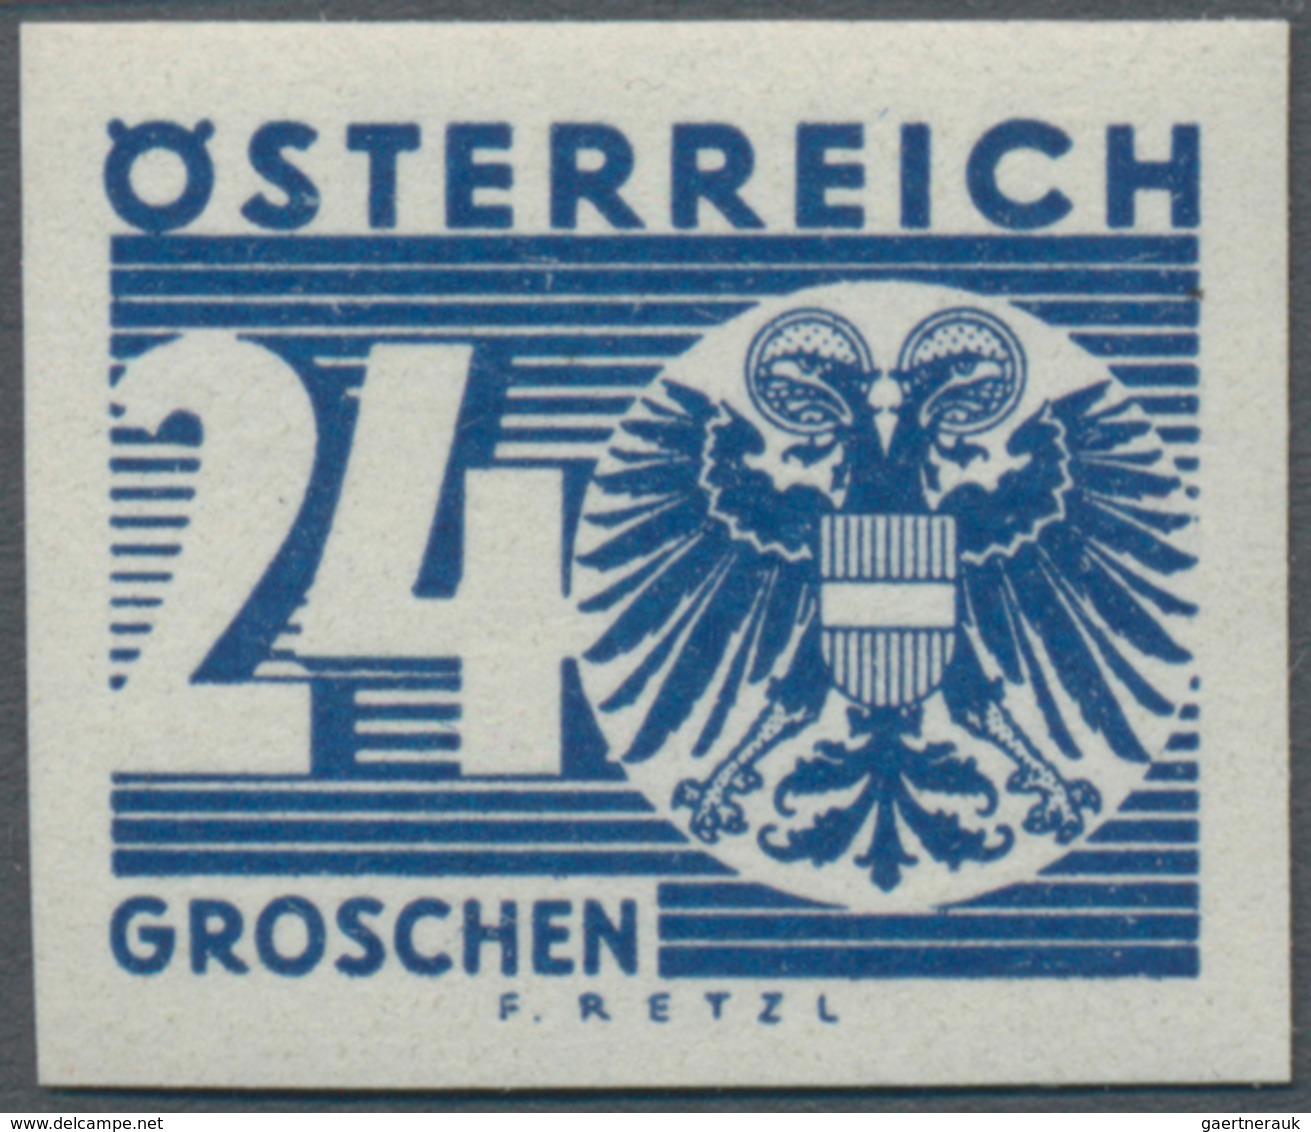 Österreich - Portomarken: 1935, Ziffern/Wappen, komplette Serie ungezähnt, postfrisch, unsigniert.